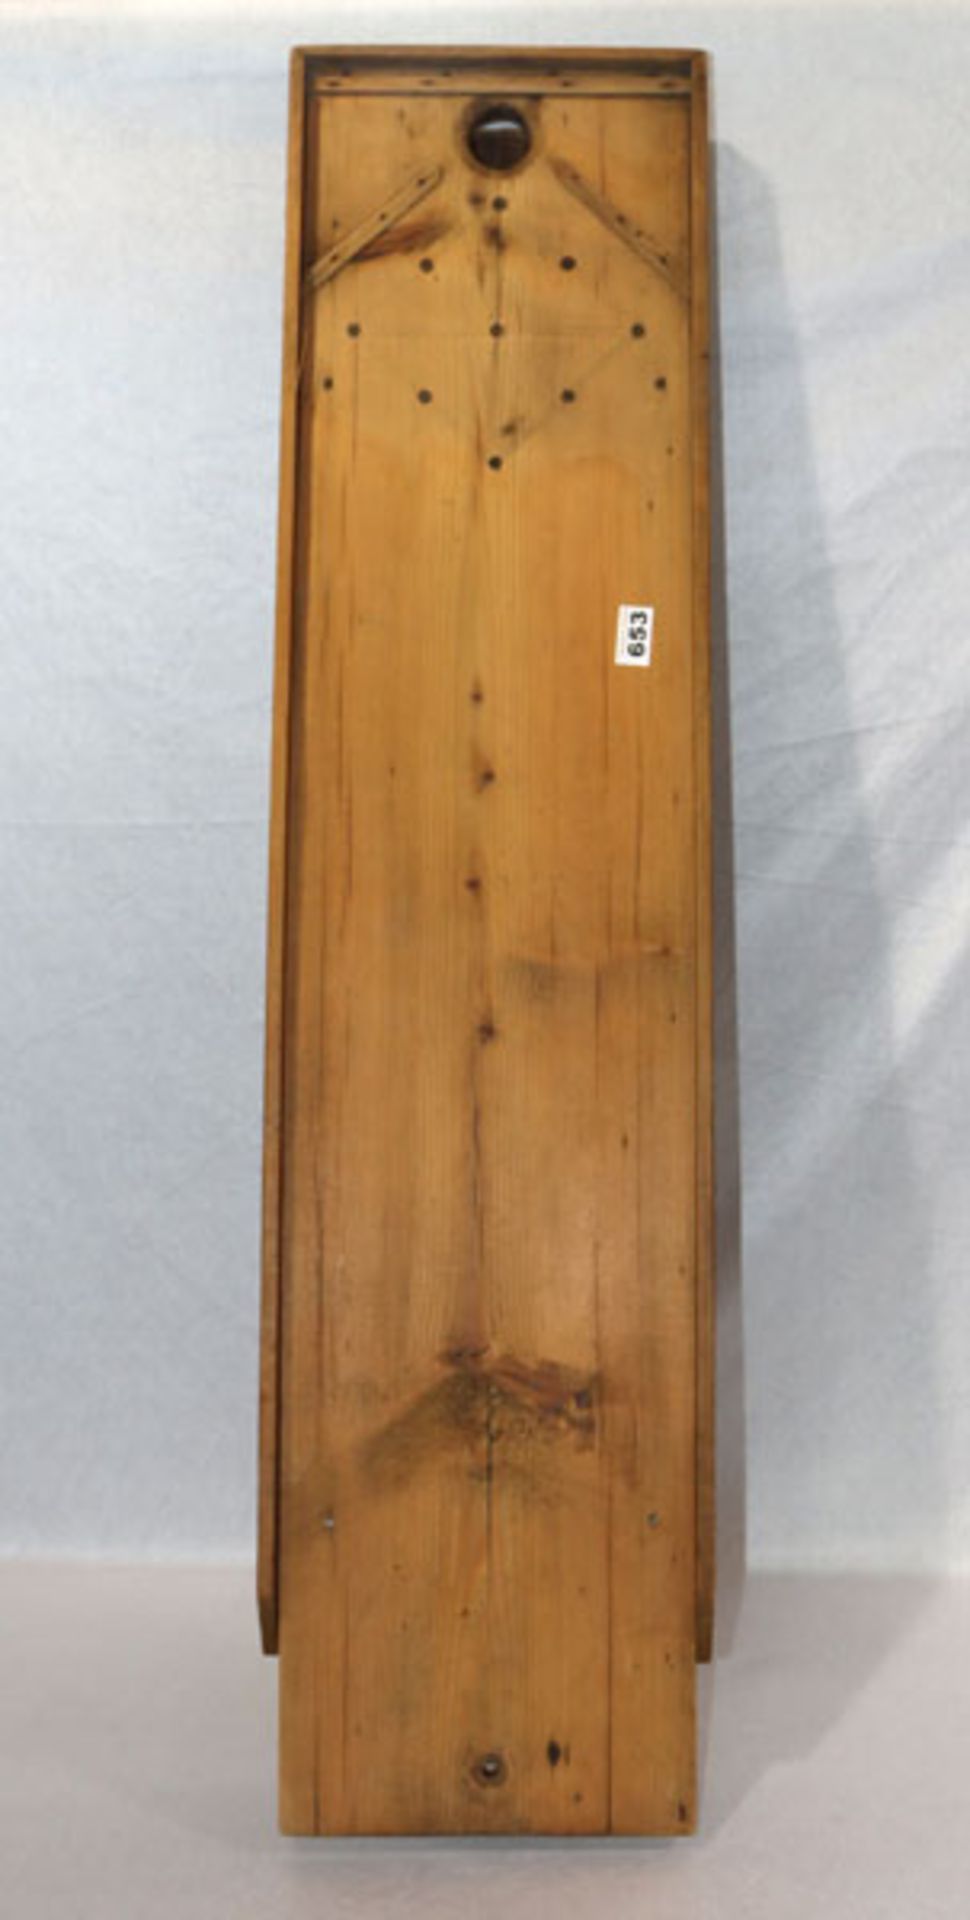 Tischkegelspiel aus Holz, nicht komplett, H 114 cm, B 27 cm, T 13 cm, Gebrauchsspuren